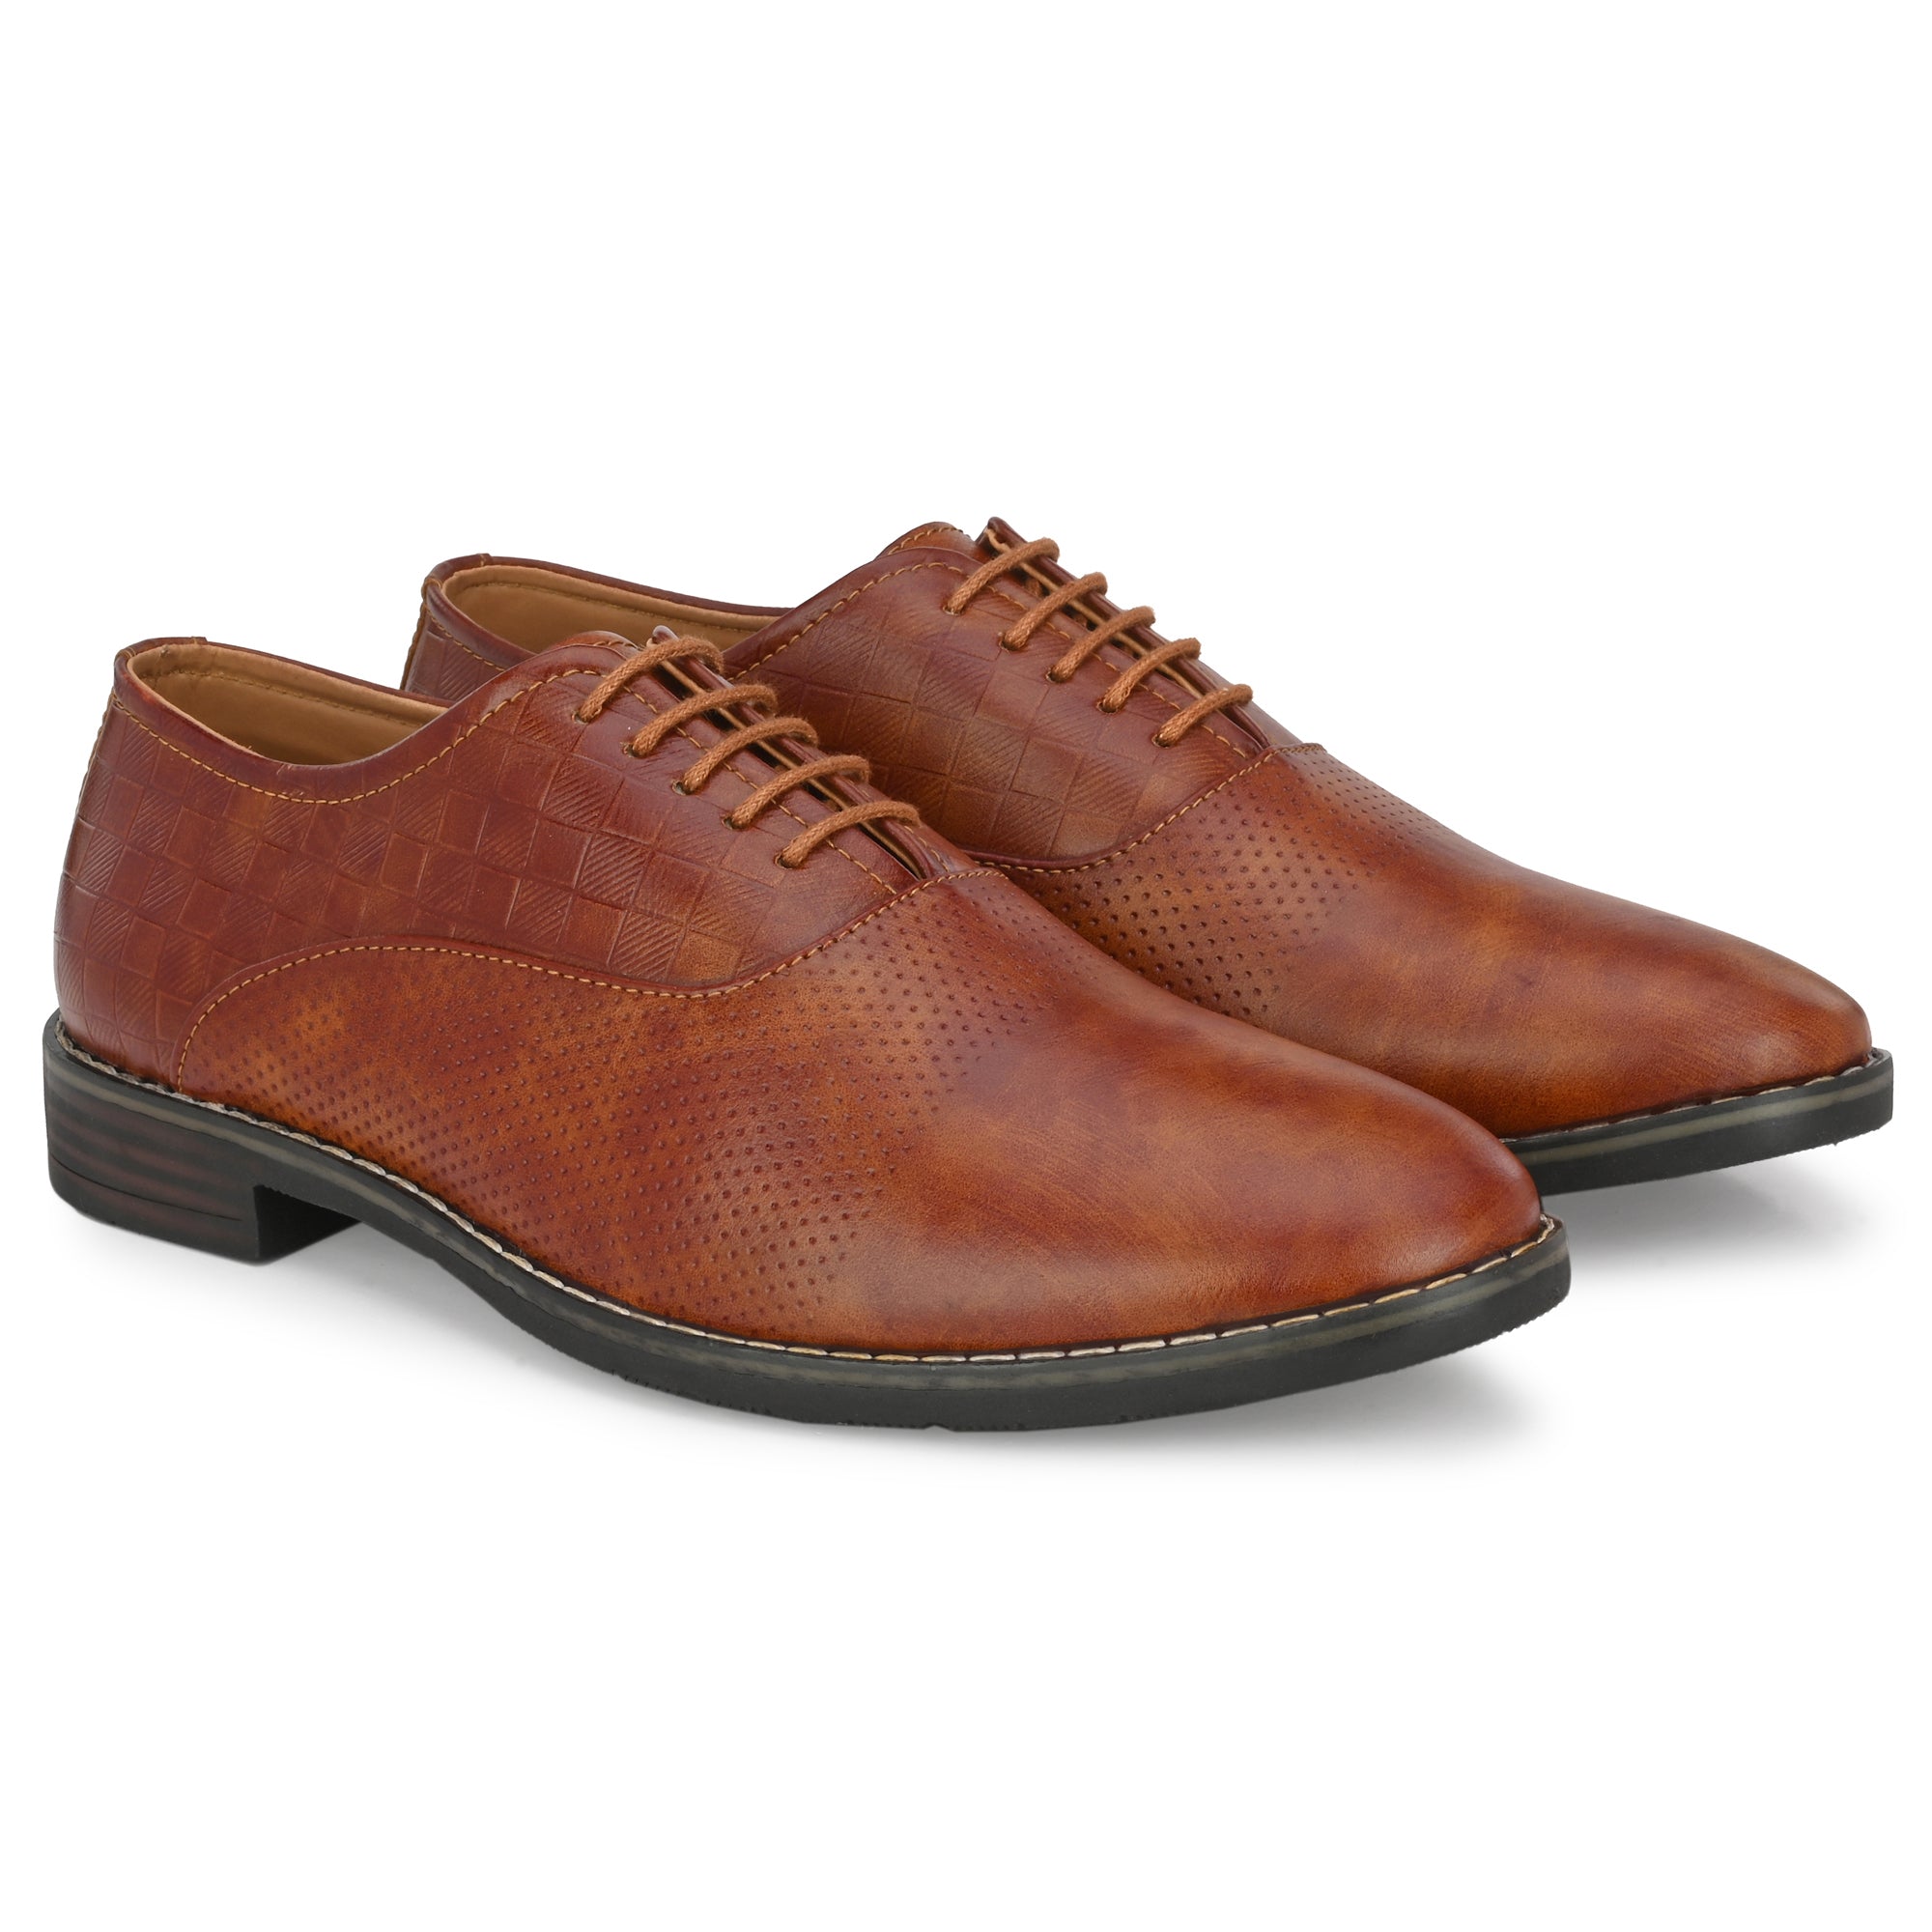 tan-formal-lace-up-attitudist-shoes-for-men-with-design-sp11c